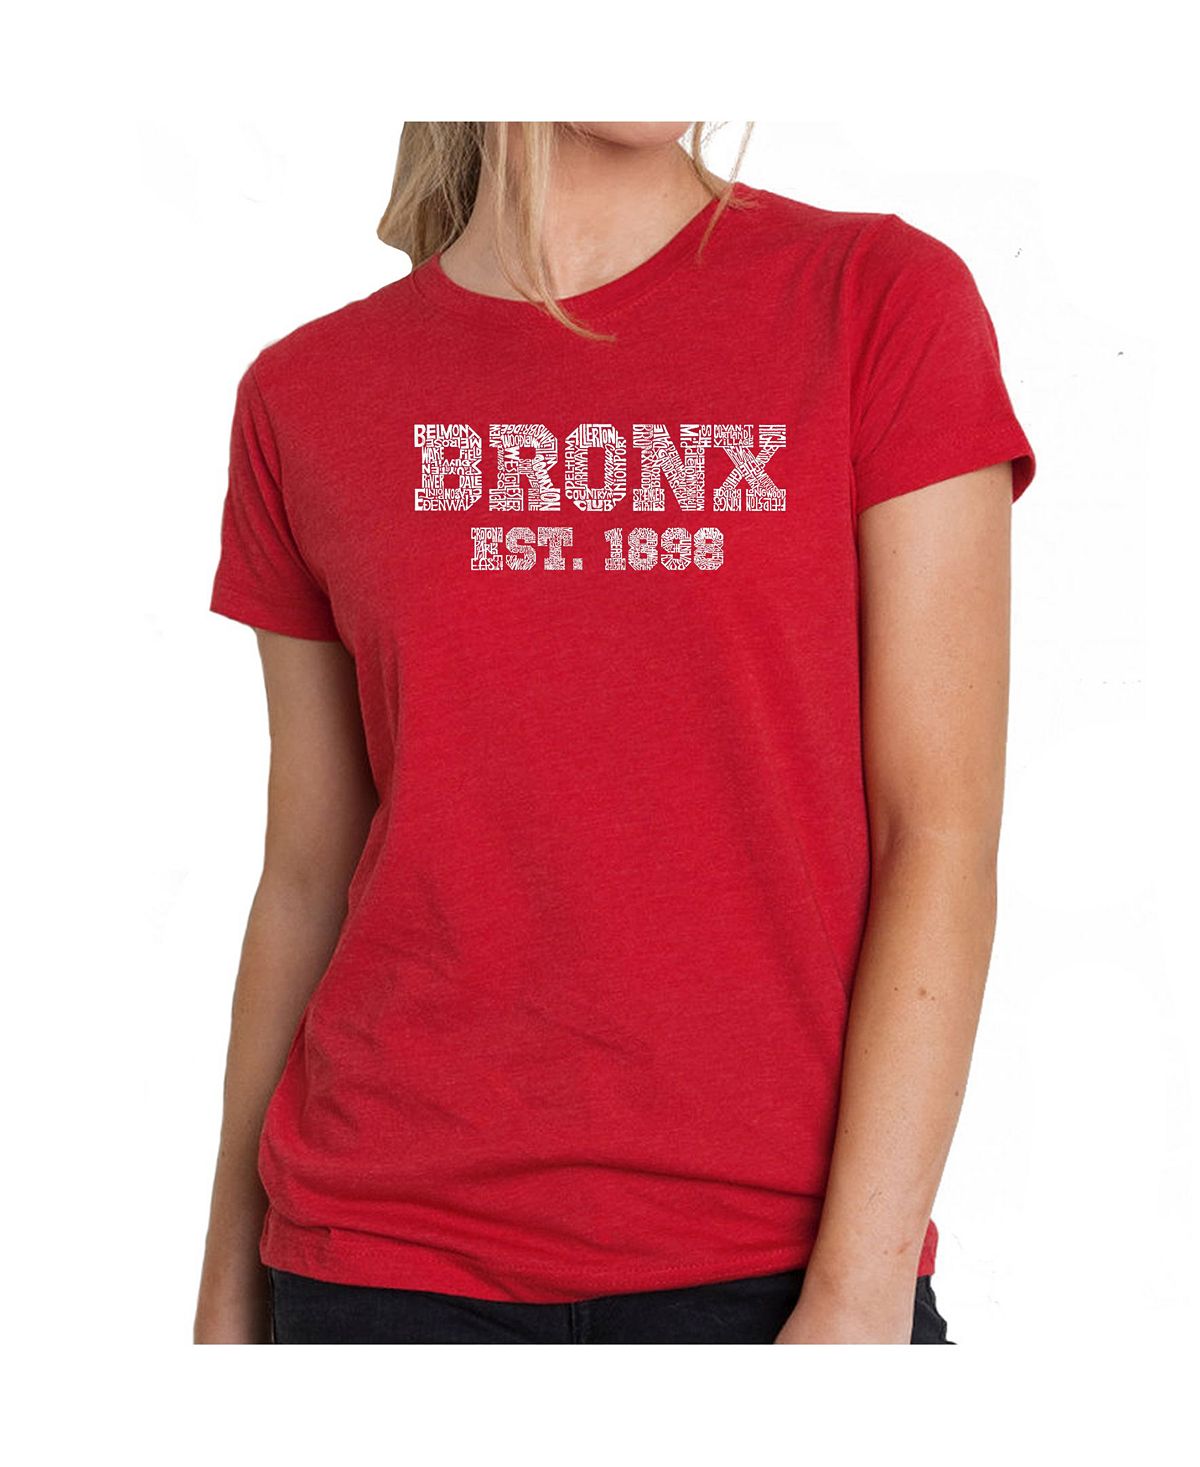 Женская футболка премиум-класса word art - популярные районы бронкса LA Pop Art, красный